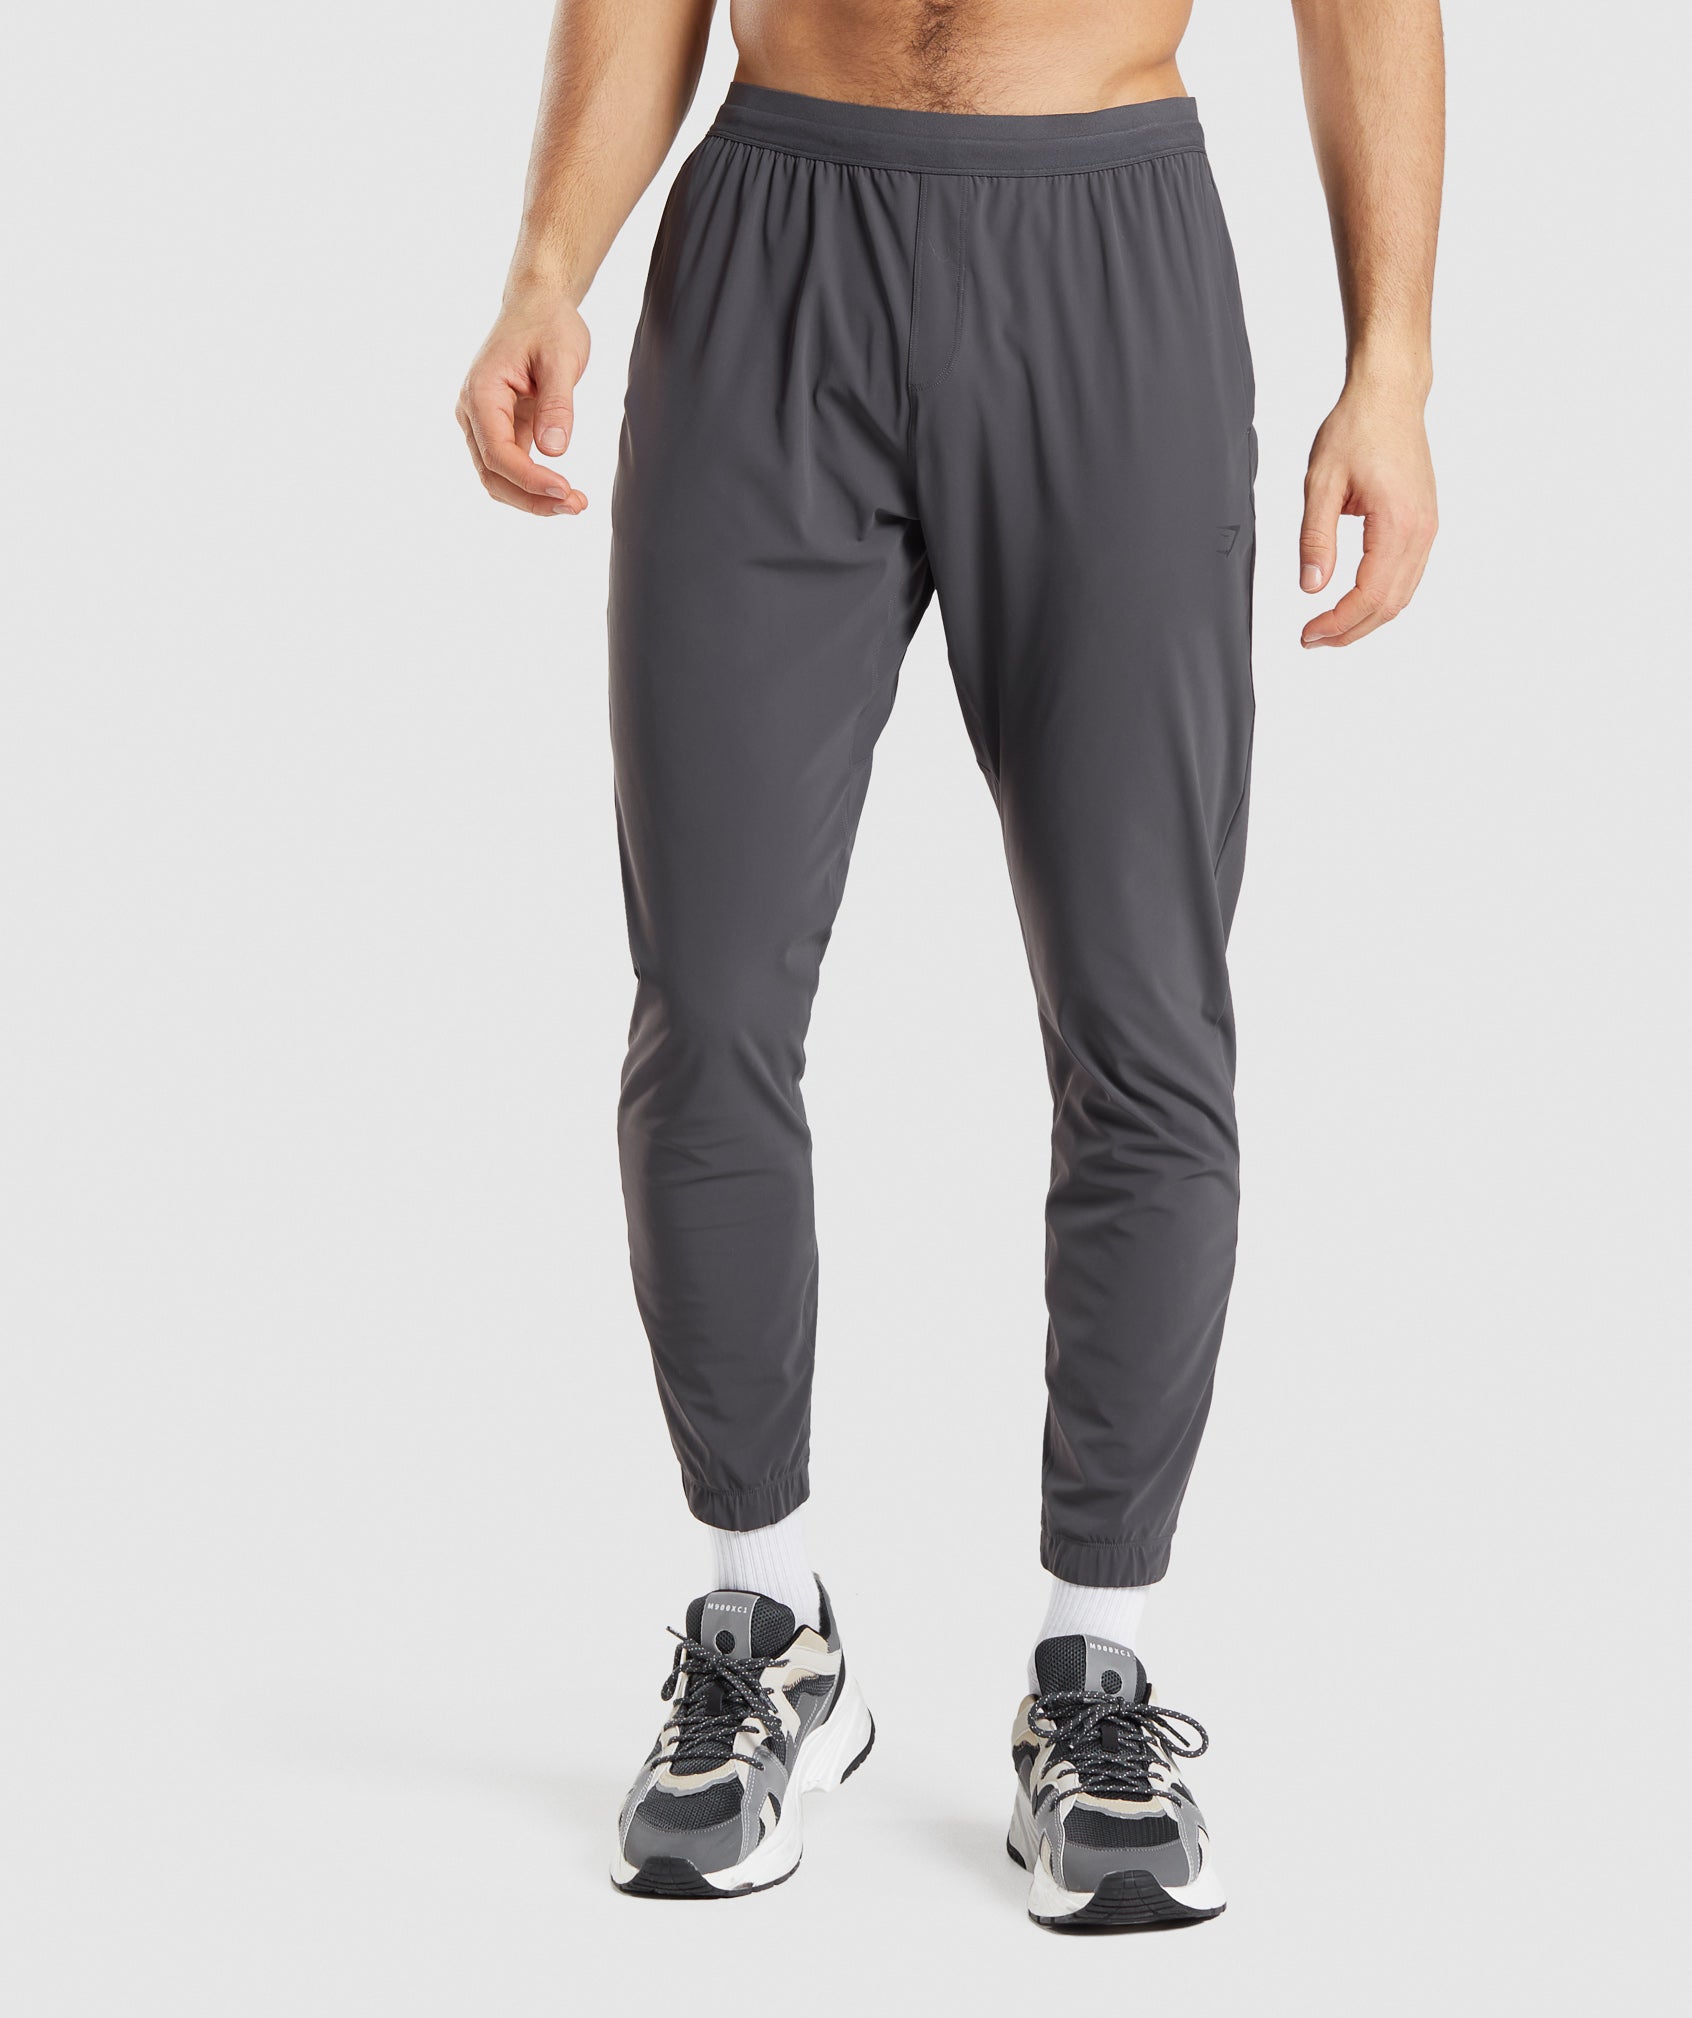 Hutch Designer Mens Slim Fit Zip Bottoms Joggers Sweat Pants Jogging Gym  Trouser